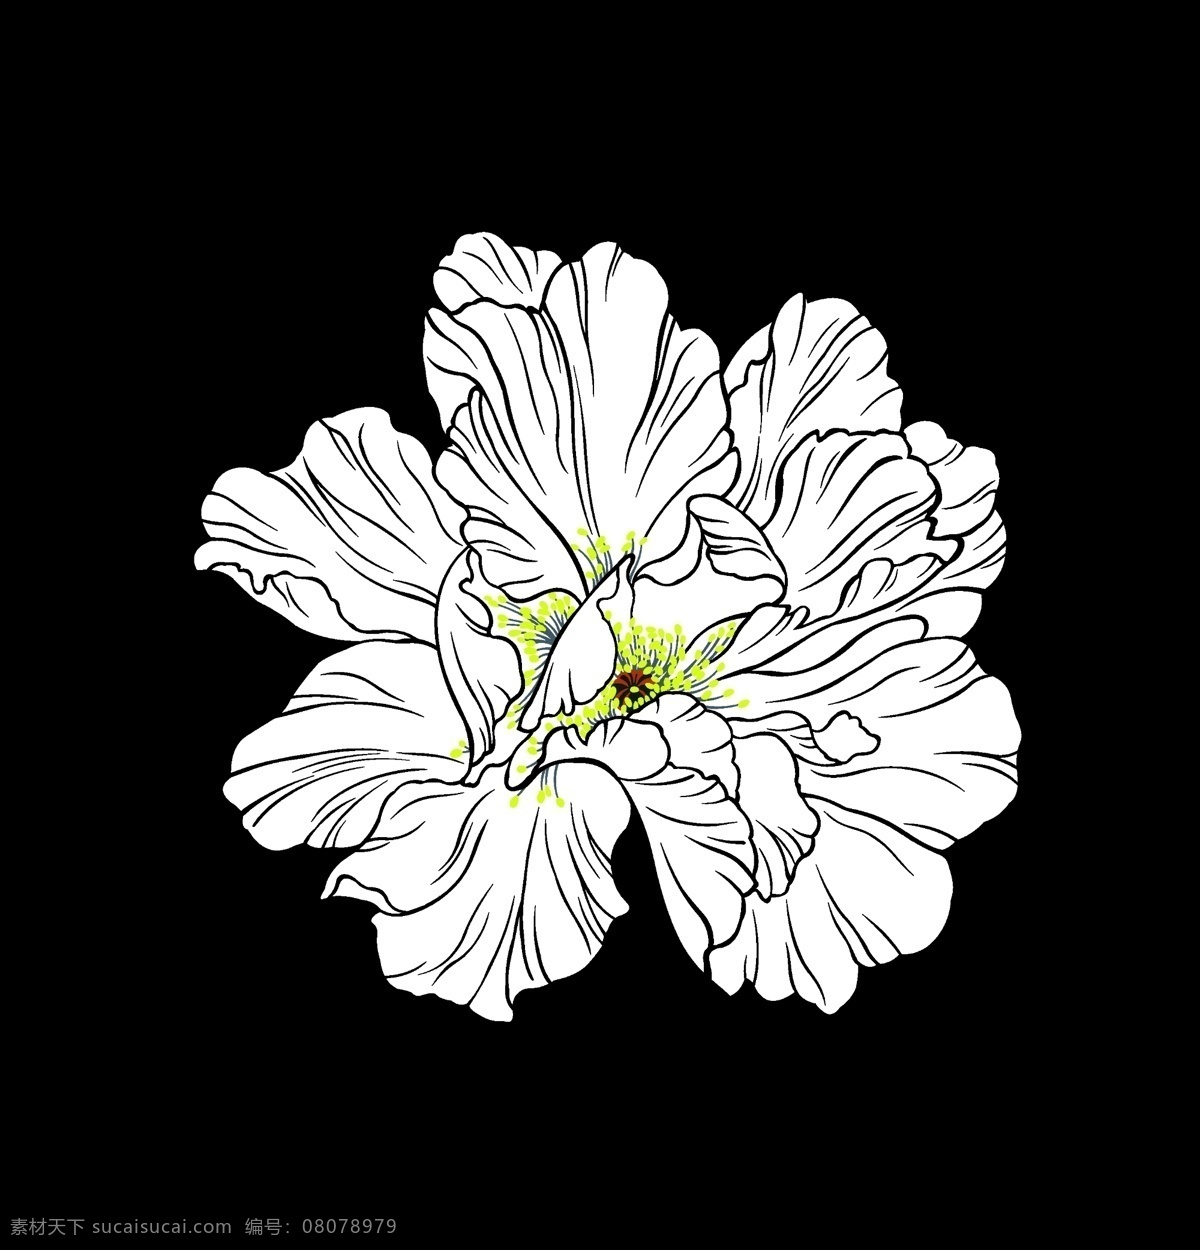 手绘花卉 线条花卉 简单花卉 印花素材 服装图案素材 家纺图案素材